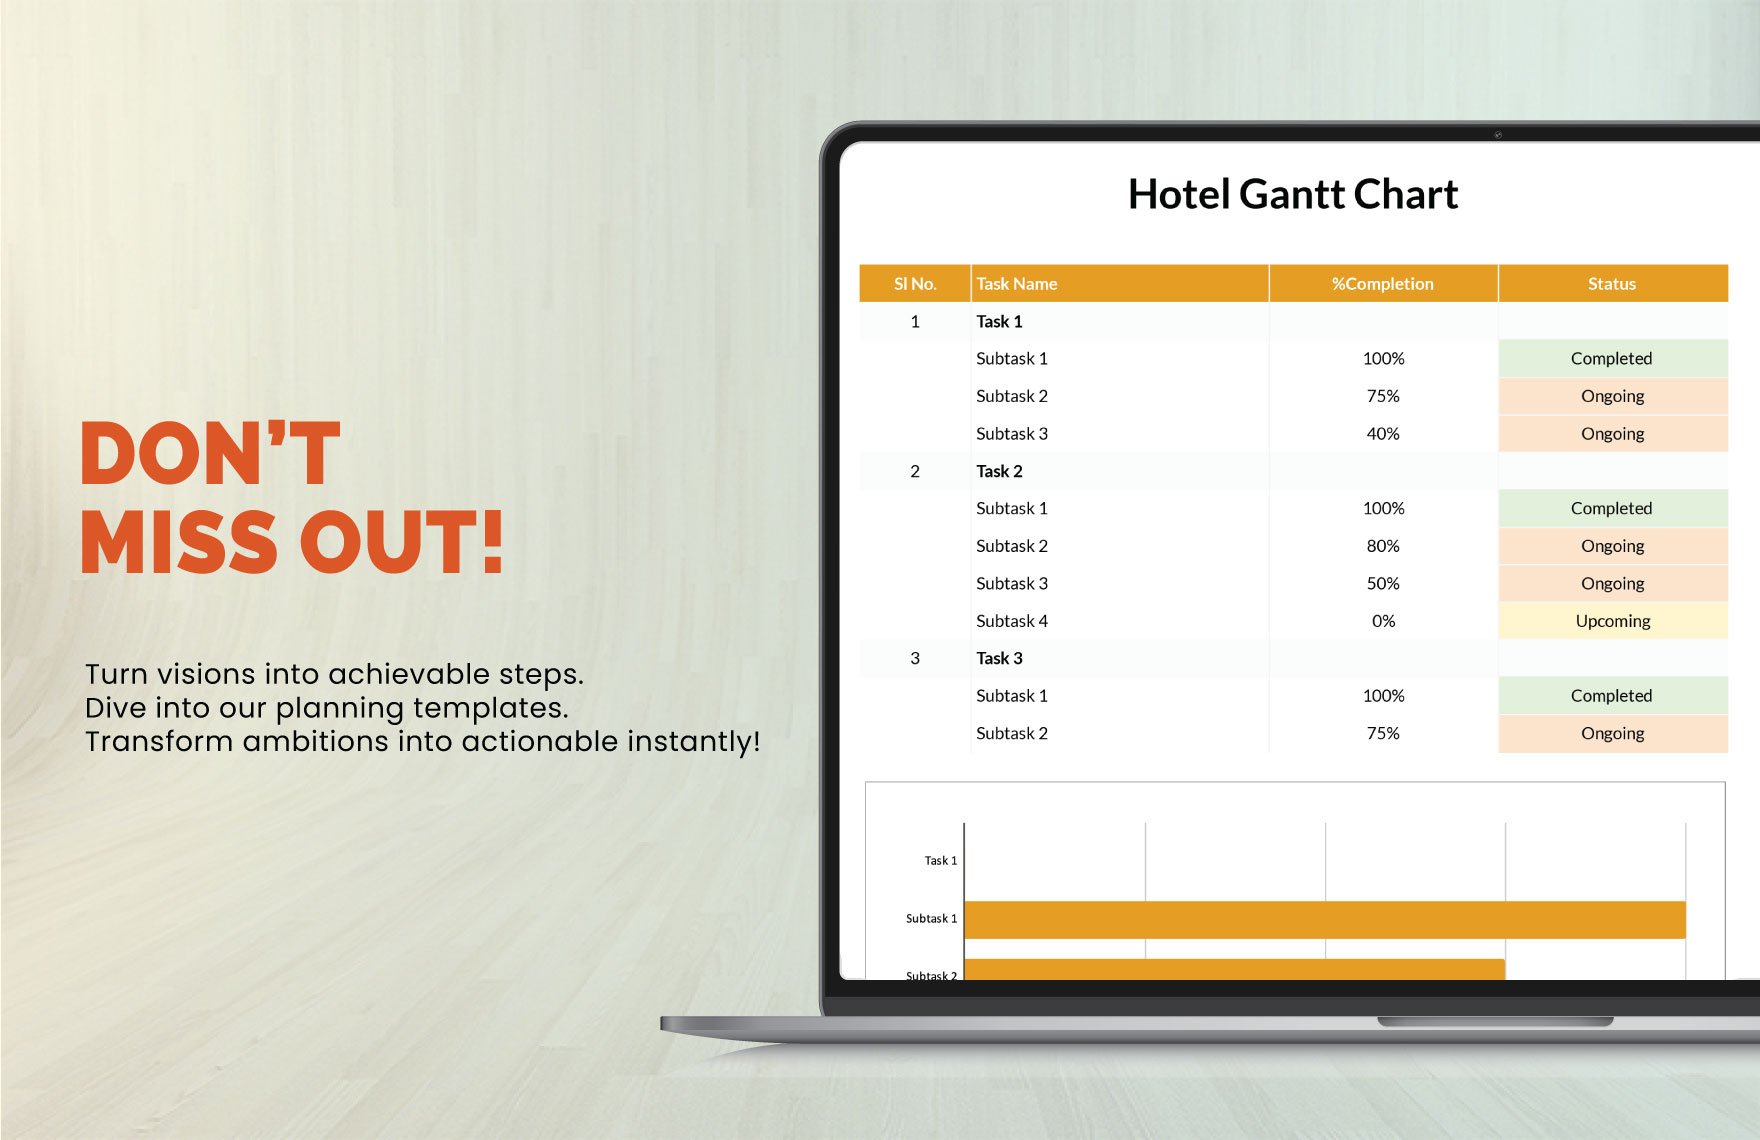 Example Hotel Gantt Chart Template